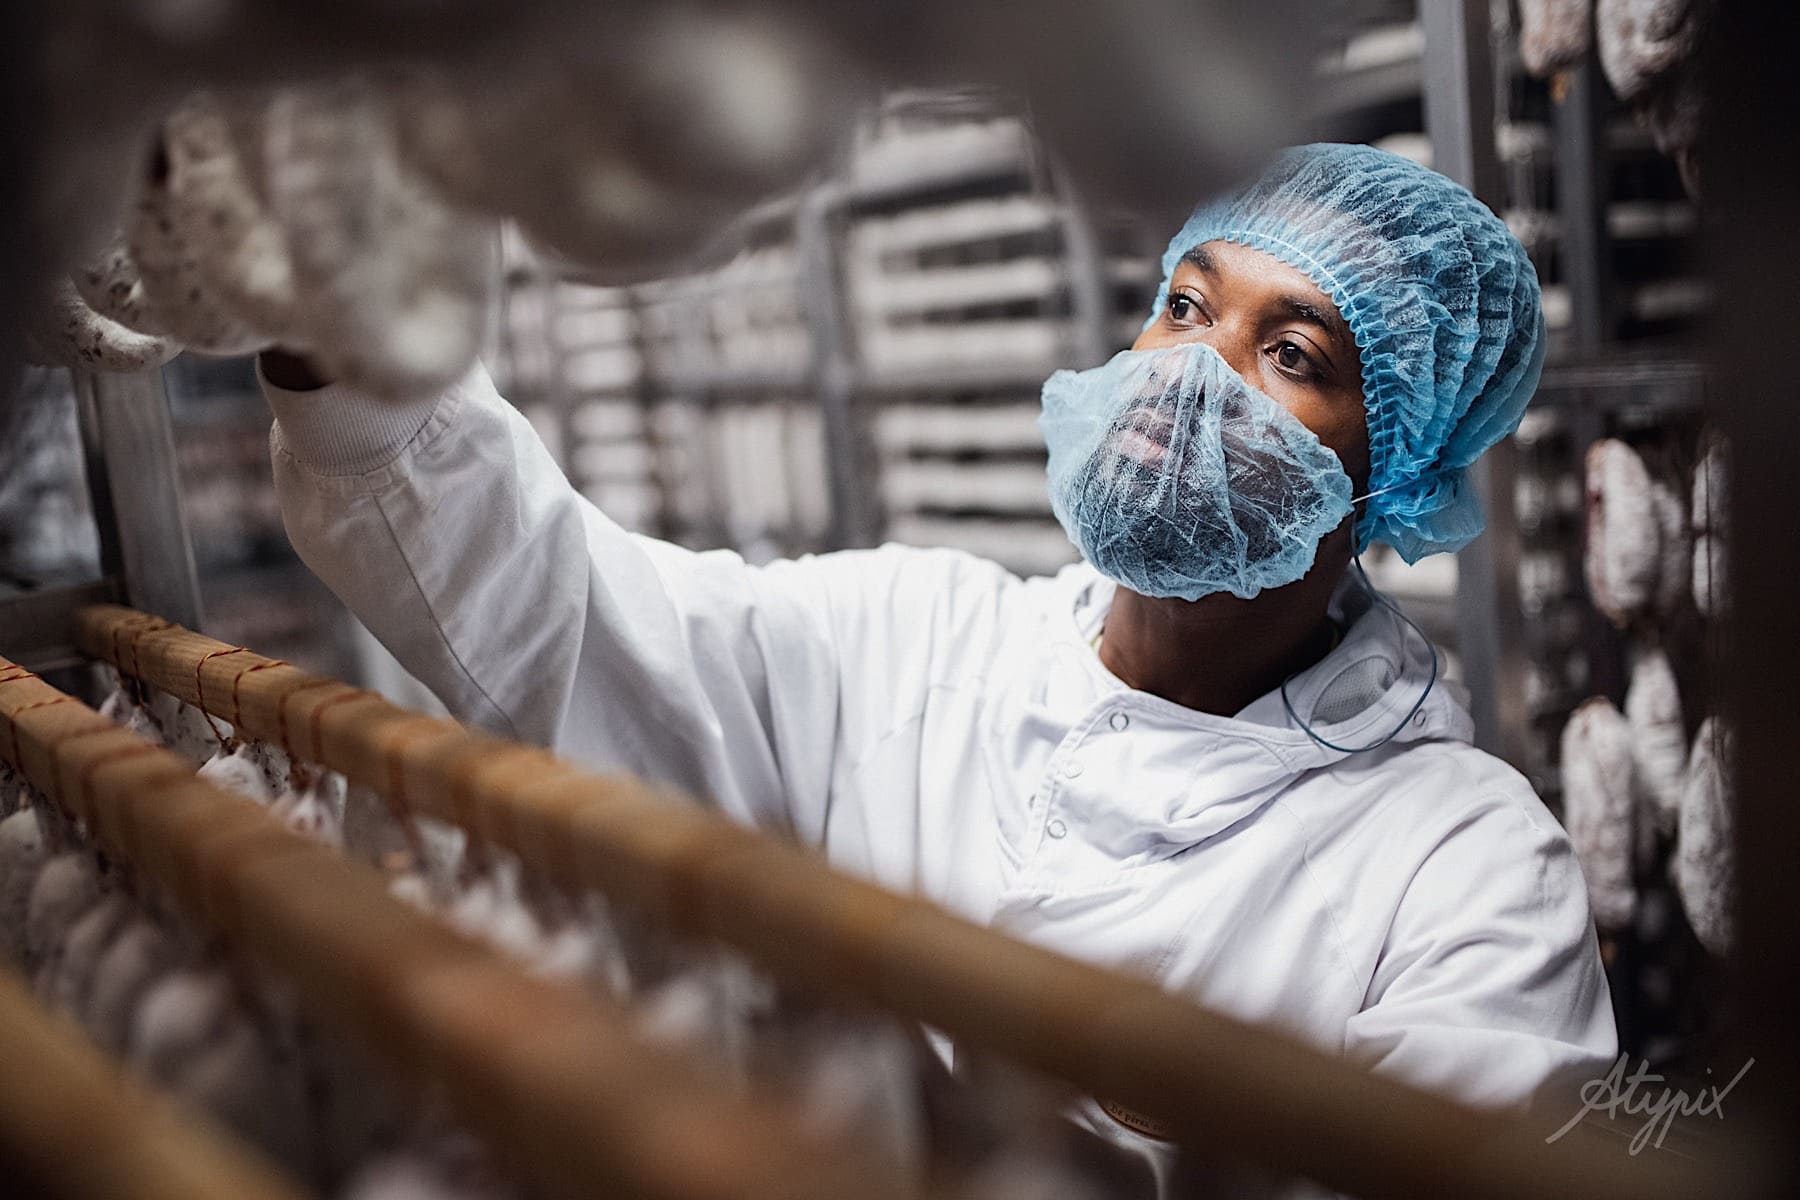 photo d'une homme en action de travail en usine agroalimentaire